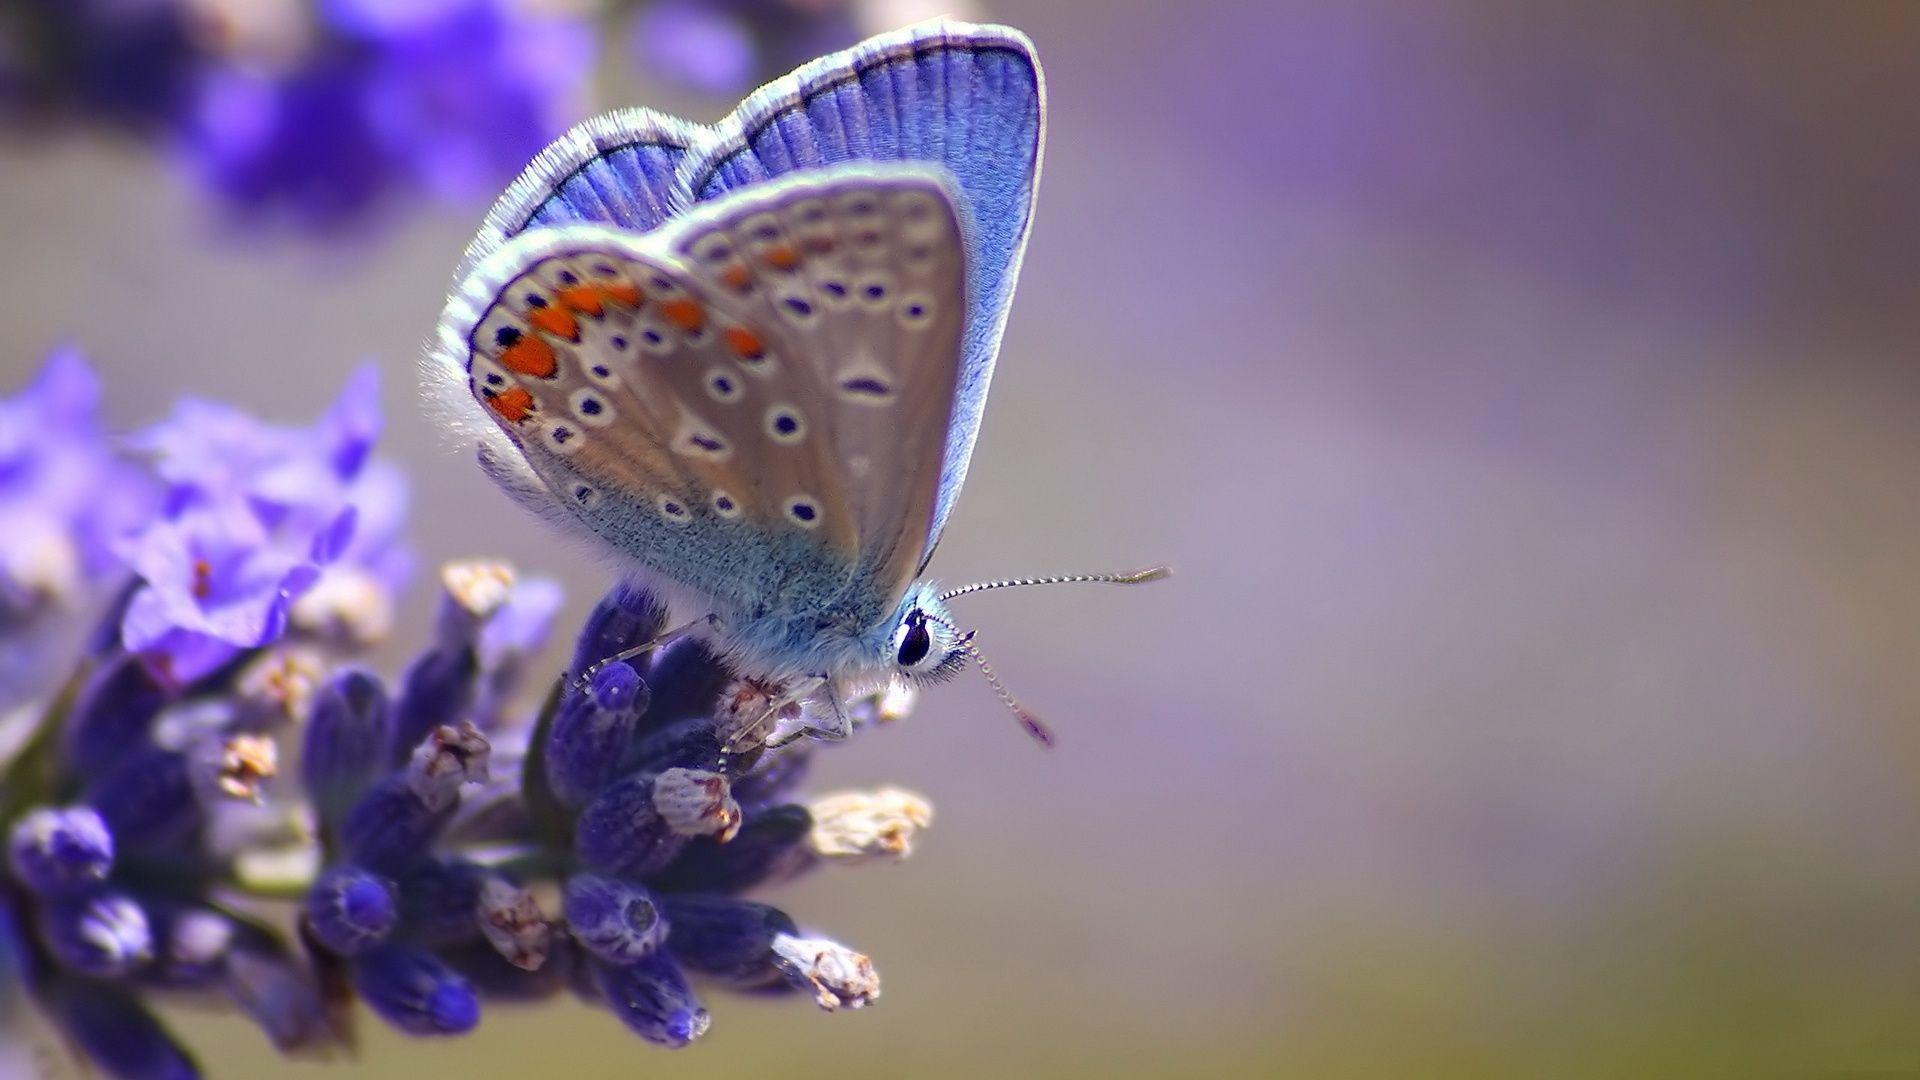 Purple Butterfly Wallpaper. One HD Wallpaper Picture